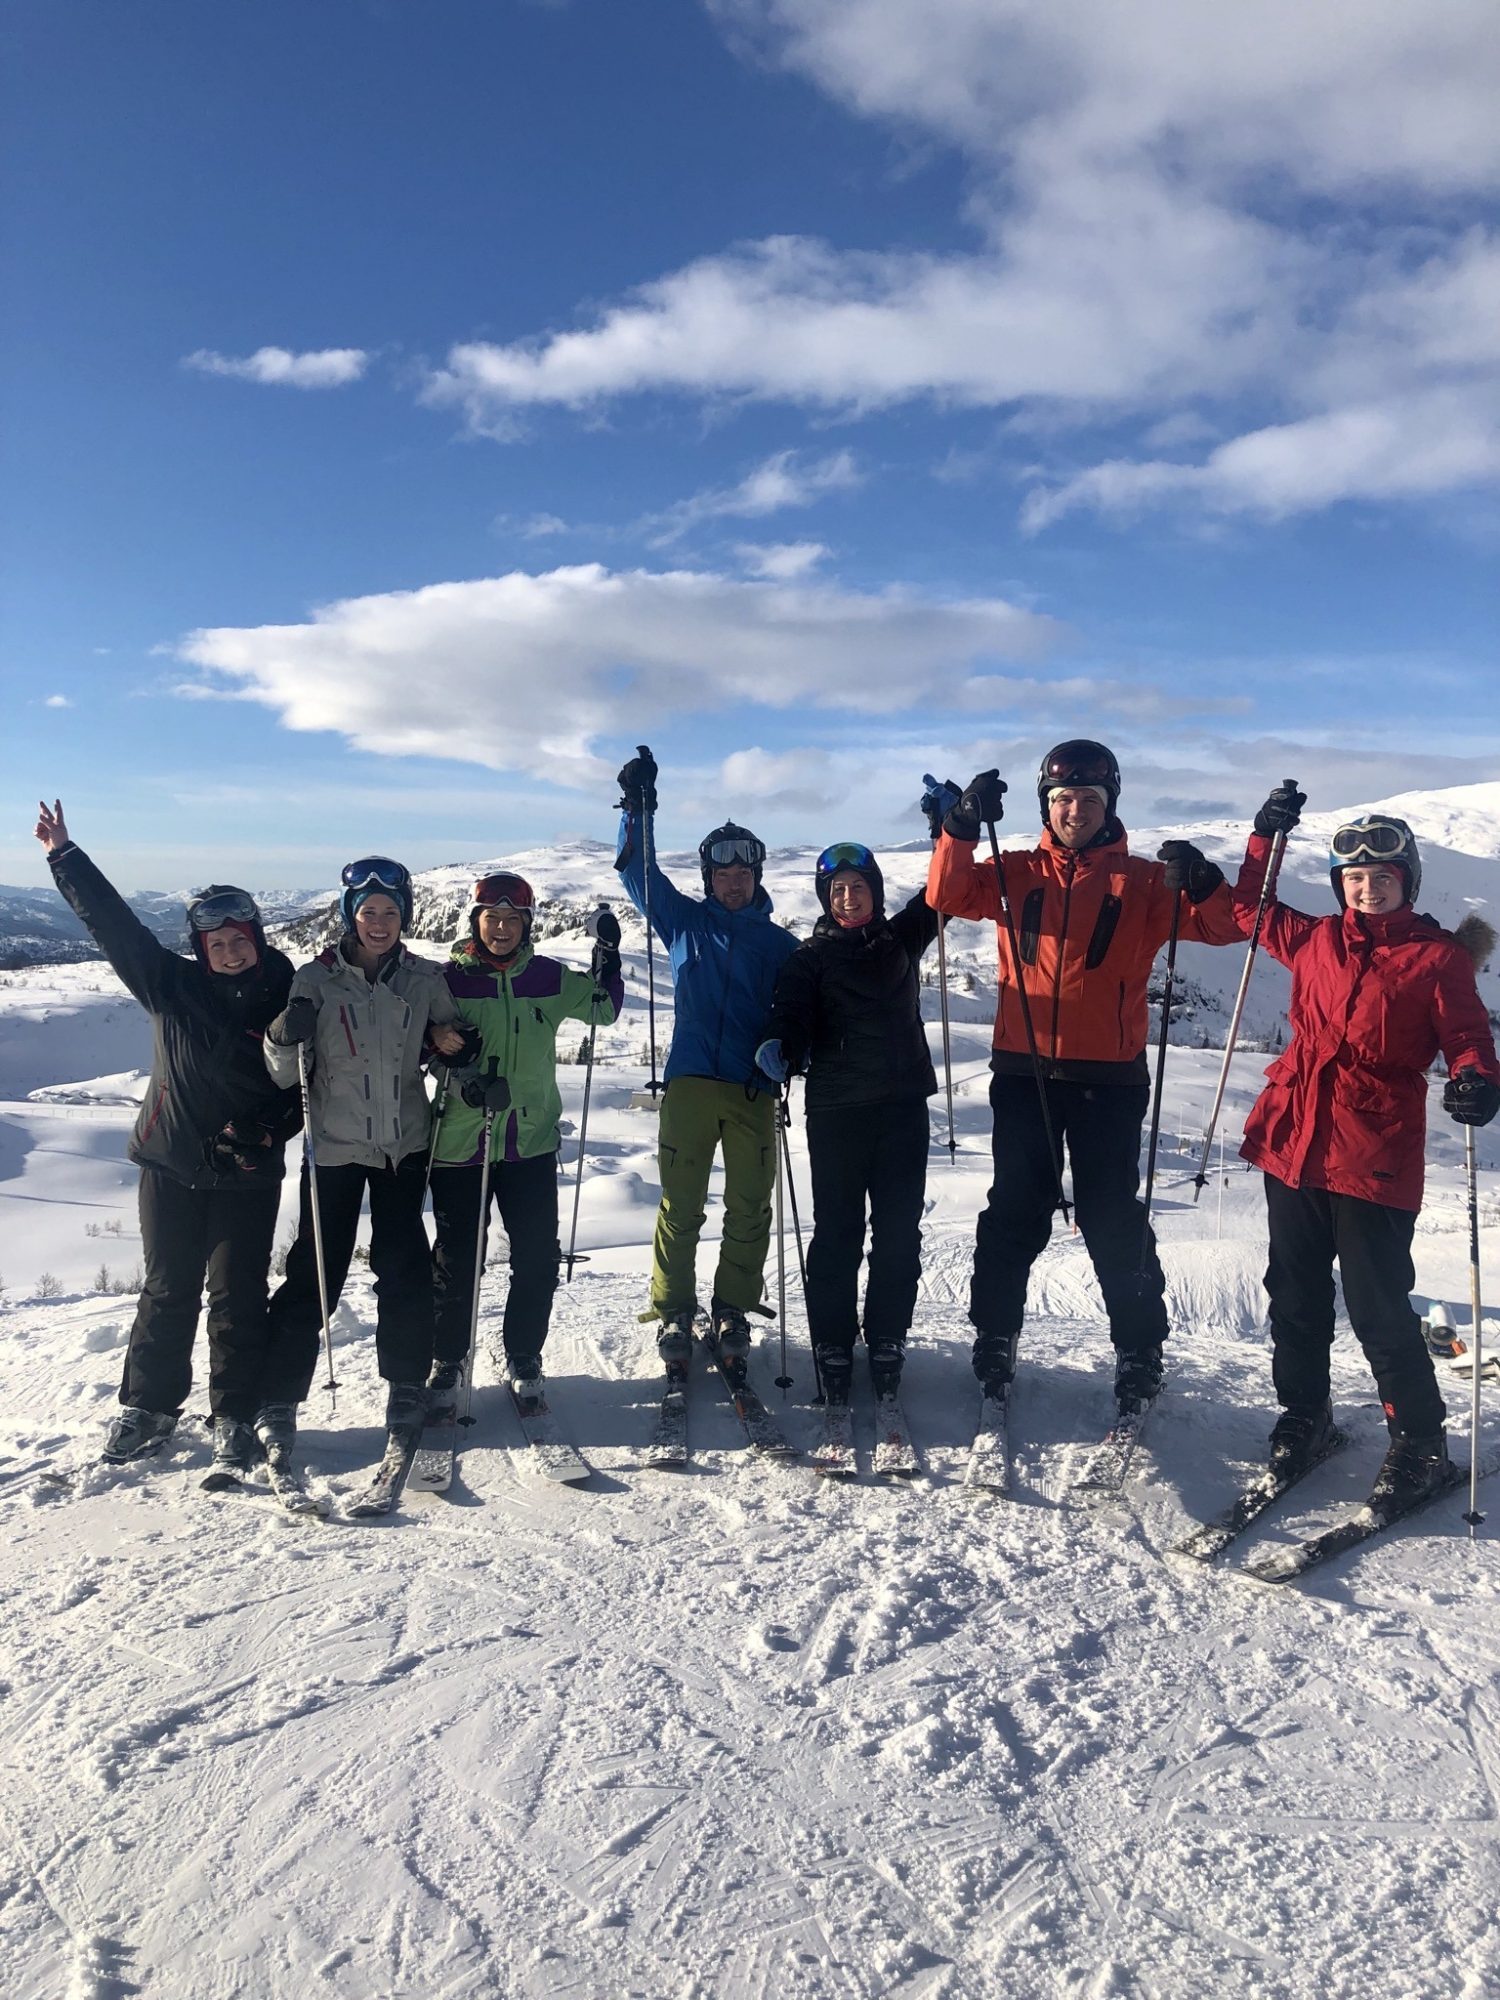 Deltagere på ski i bakken